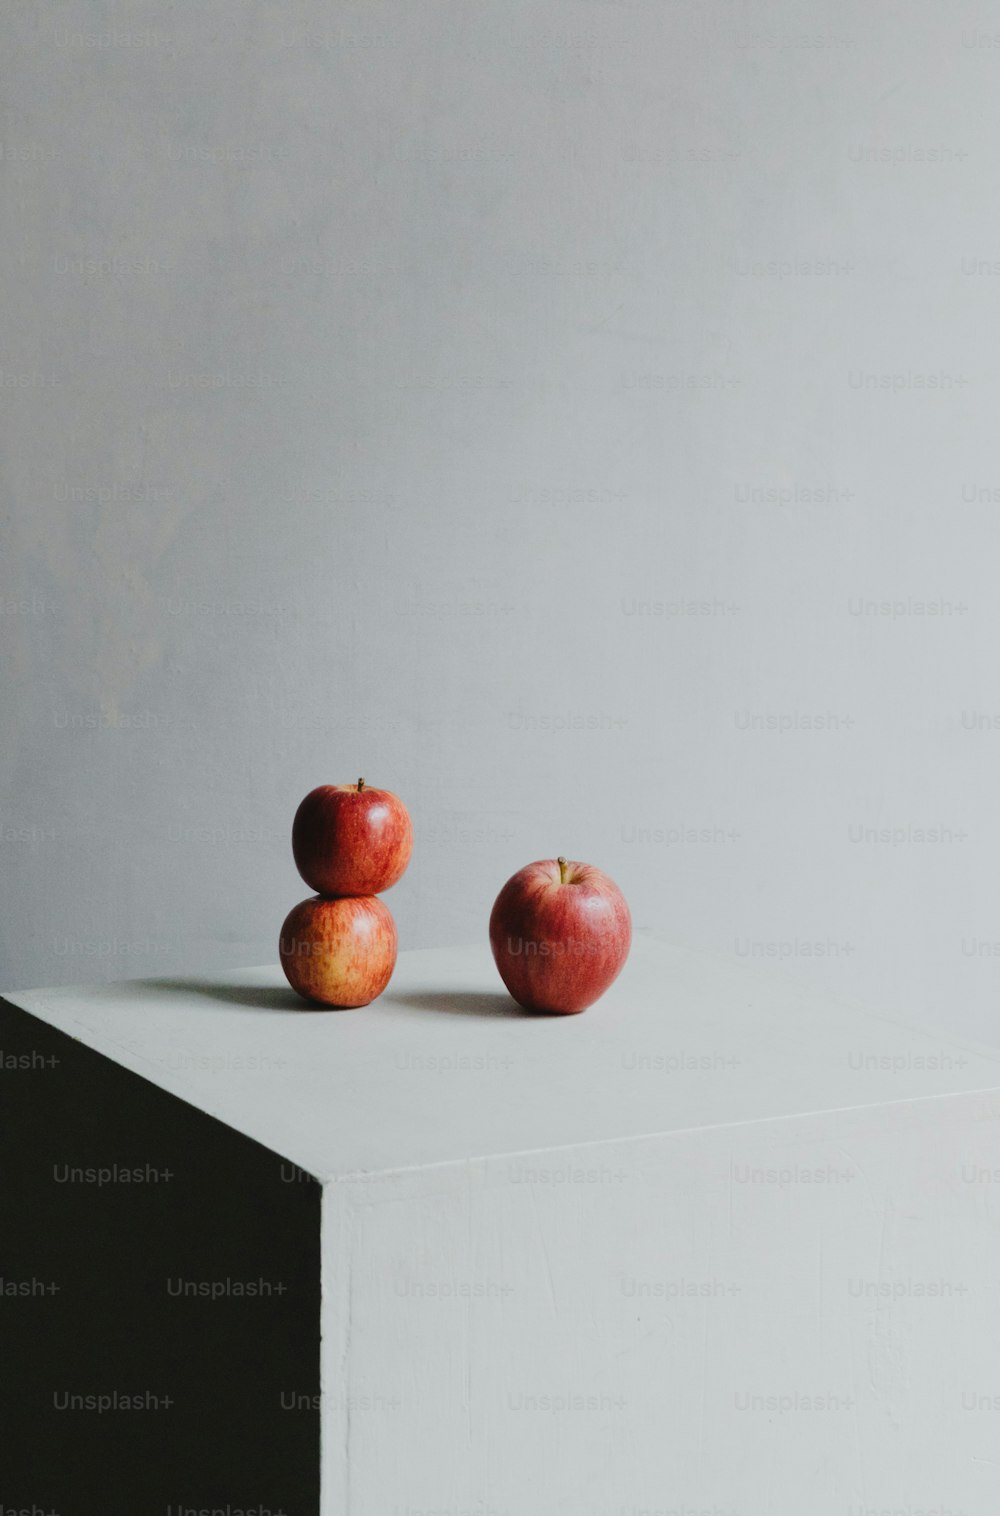 하얀 표면 위에 앉아 있는 두 개의 사과